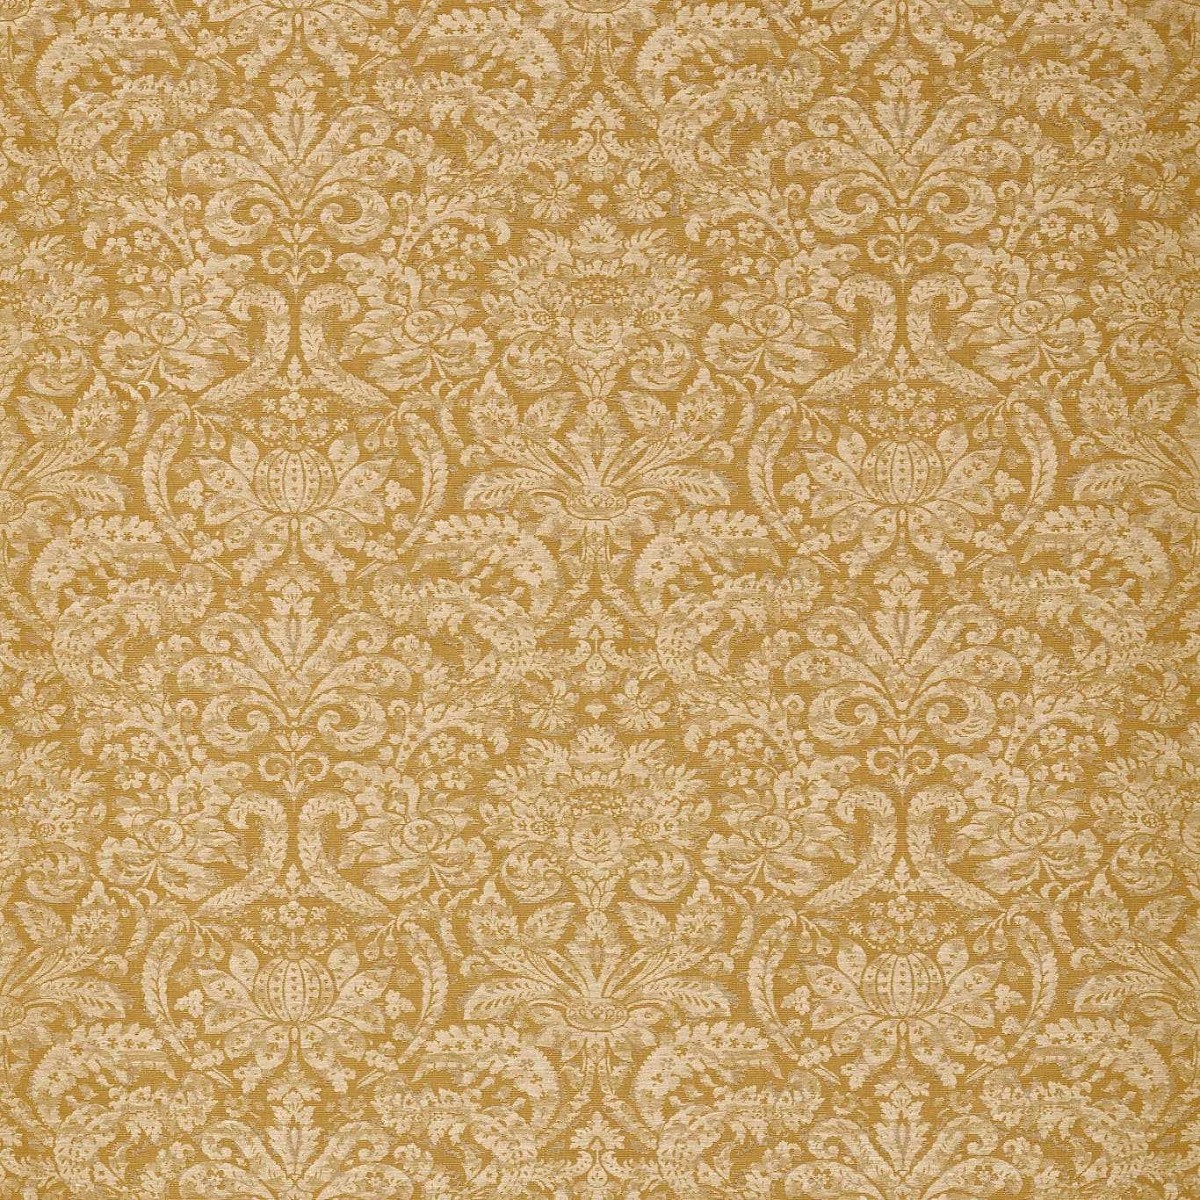 Knole Damask Gold Fabric by Zoffany